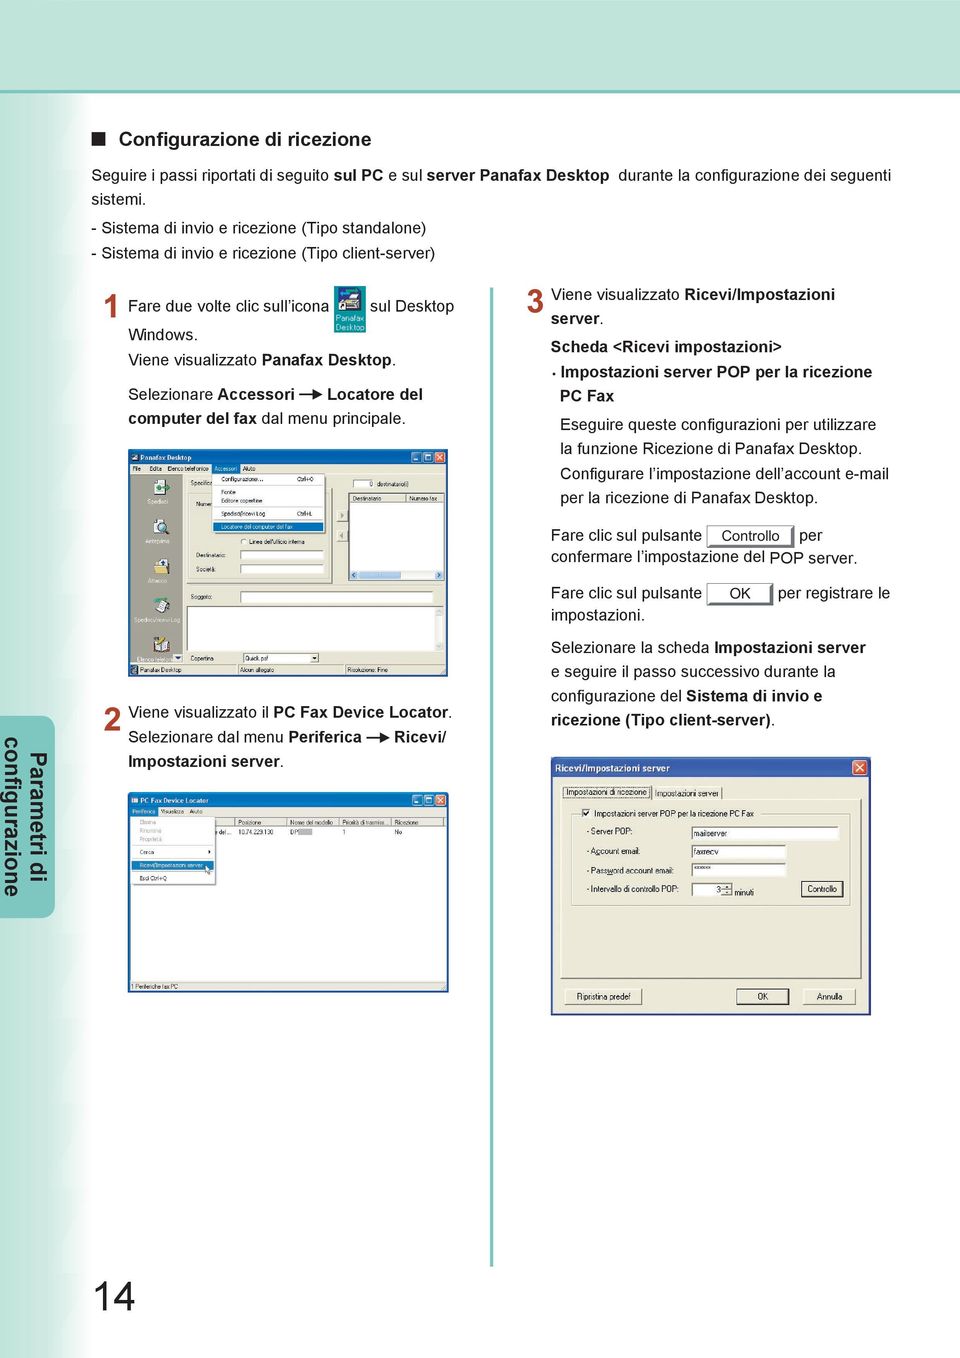 Selezionare Accessori Locatore del computer del fax dal menu principale. Viene visualizzato Ricevi/Impostazioni server.